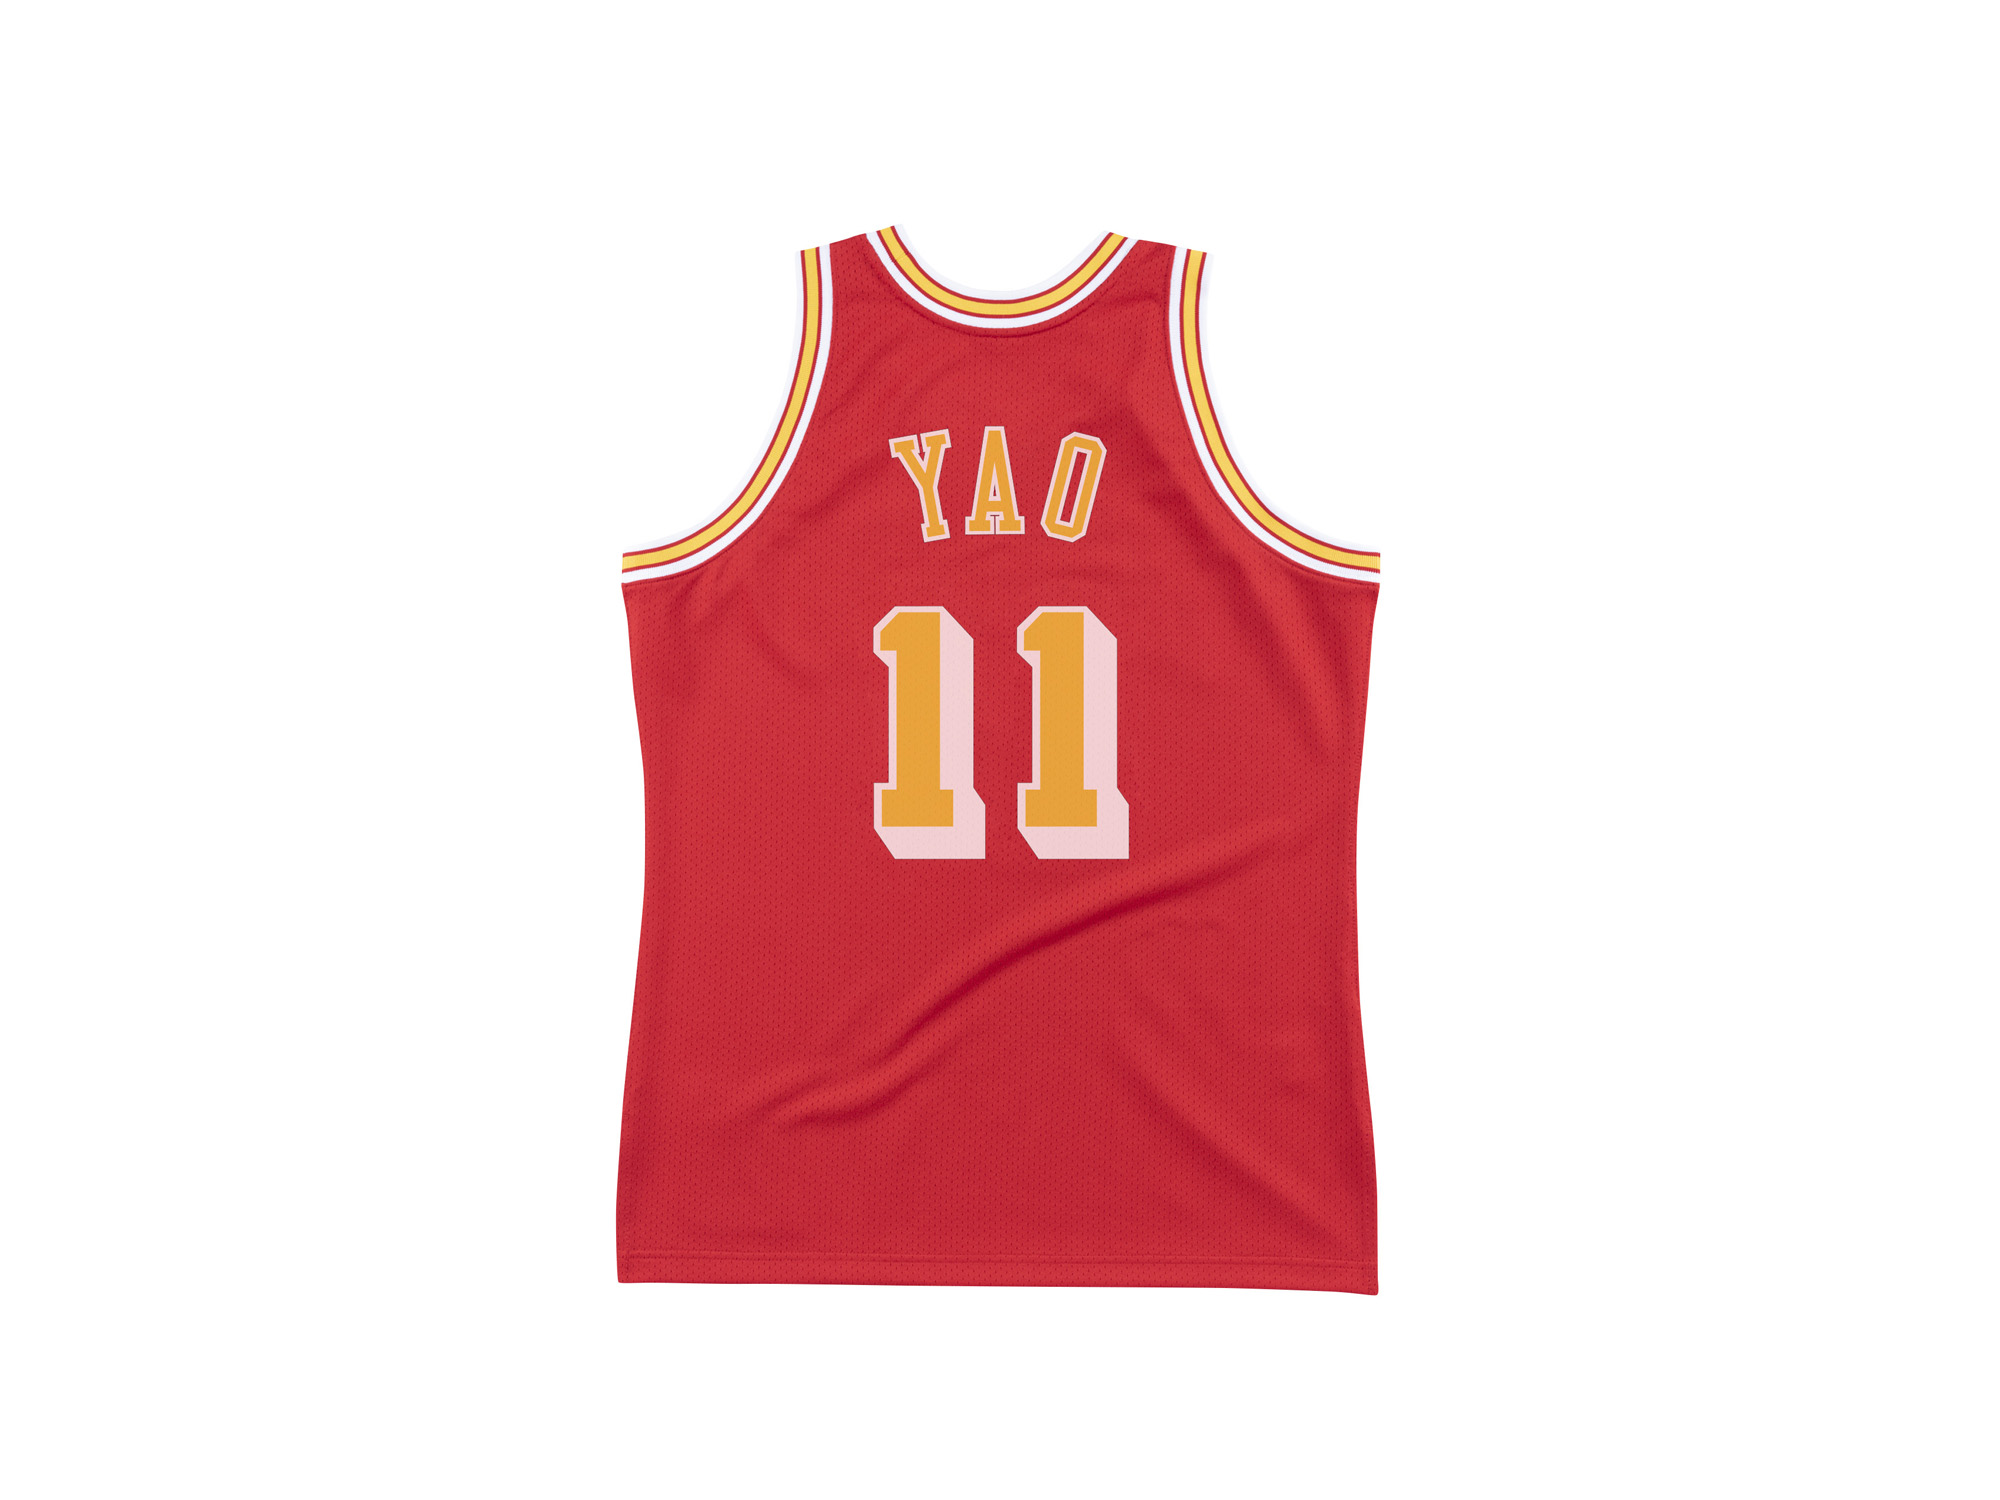  Yao Ming NBA Classic Swingman Jersey